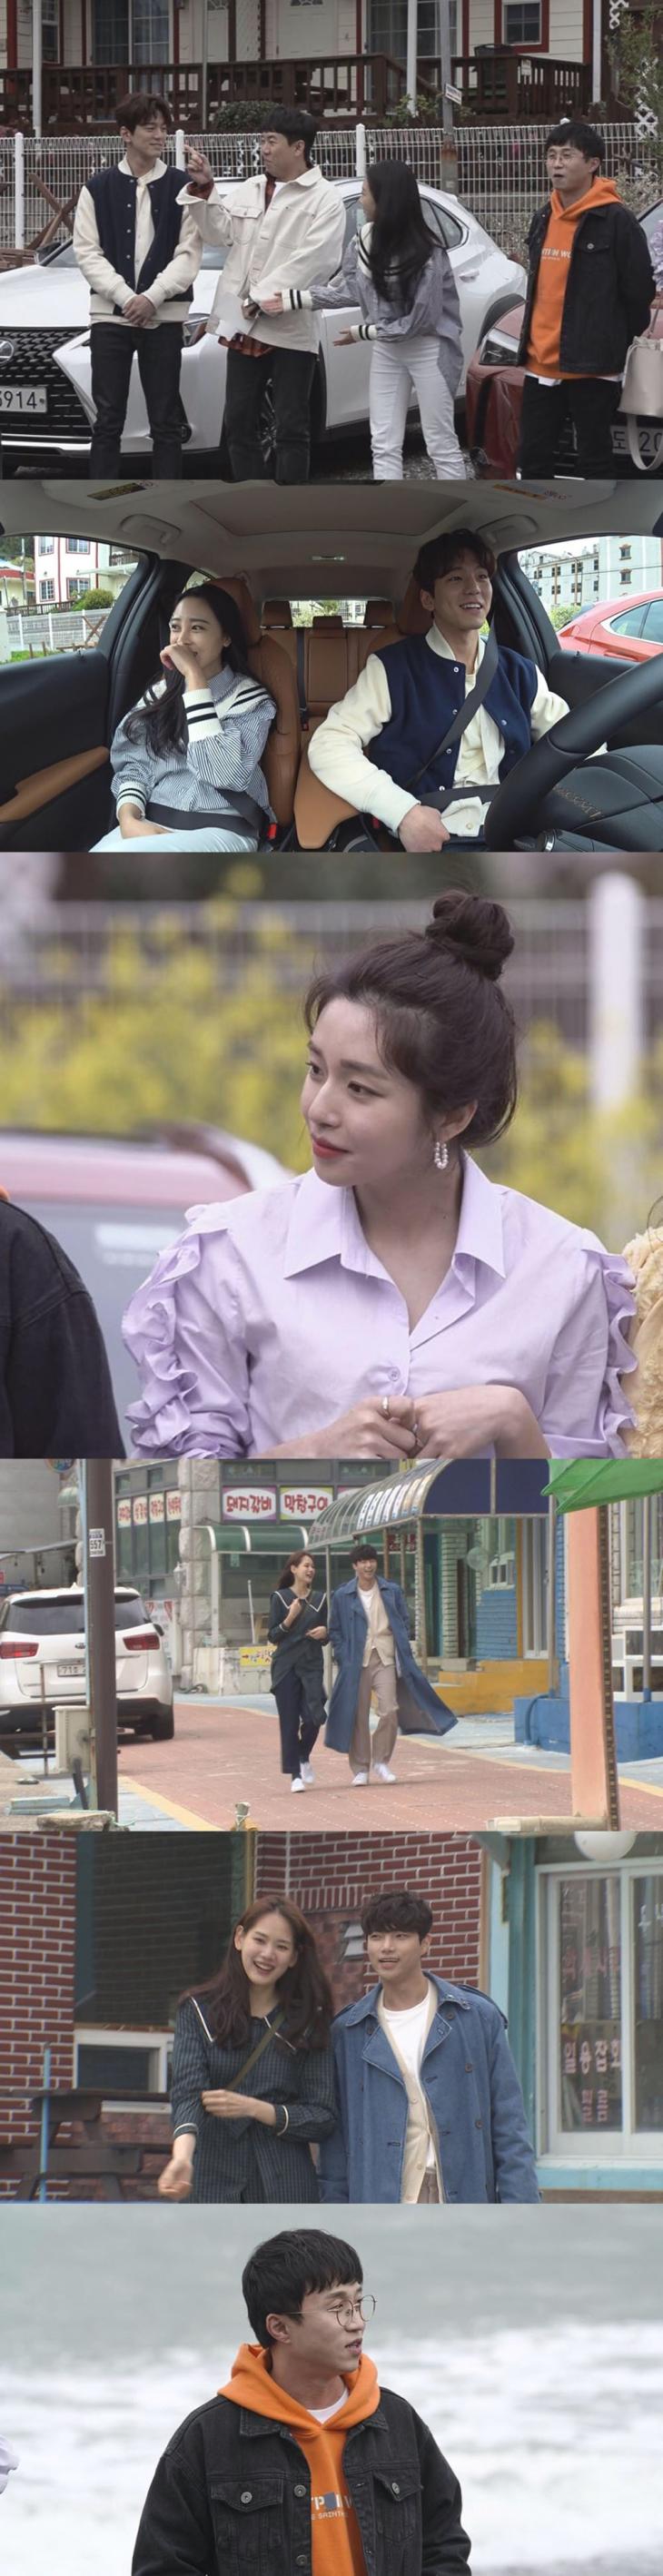 MBC ‘호구의 연애’ 캡쳐